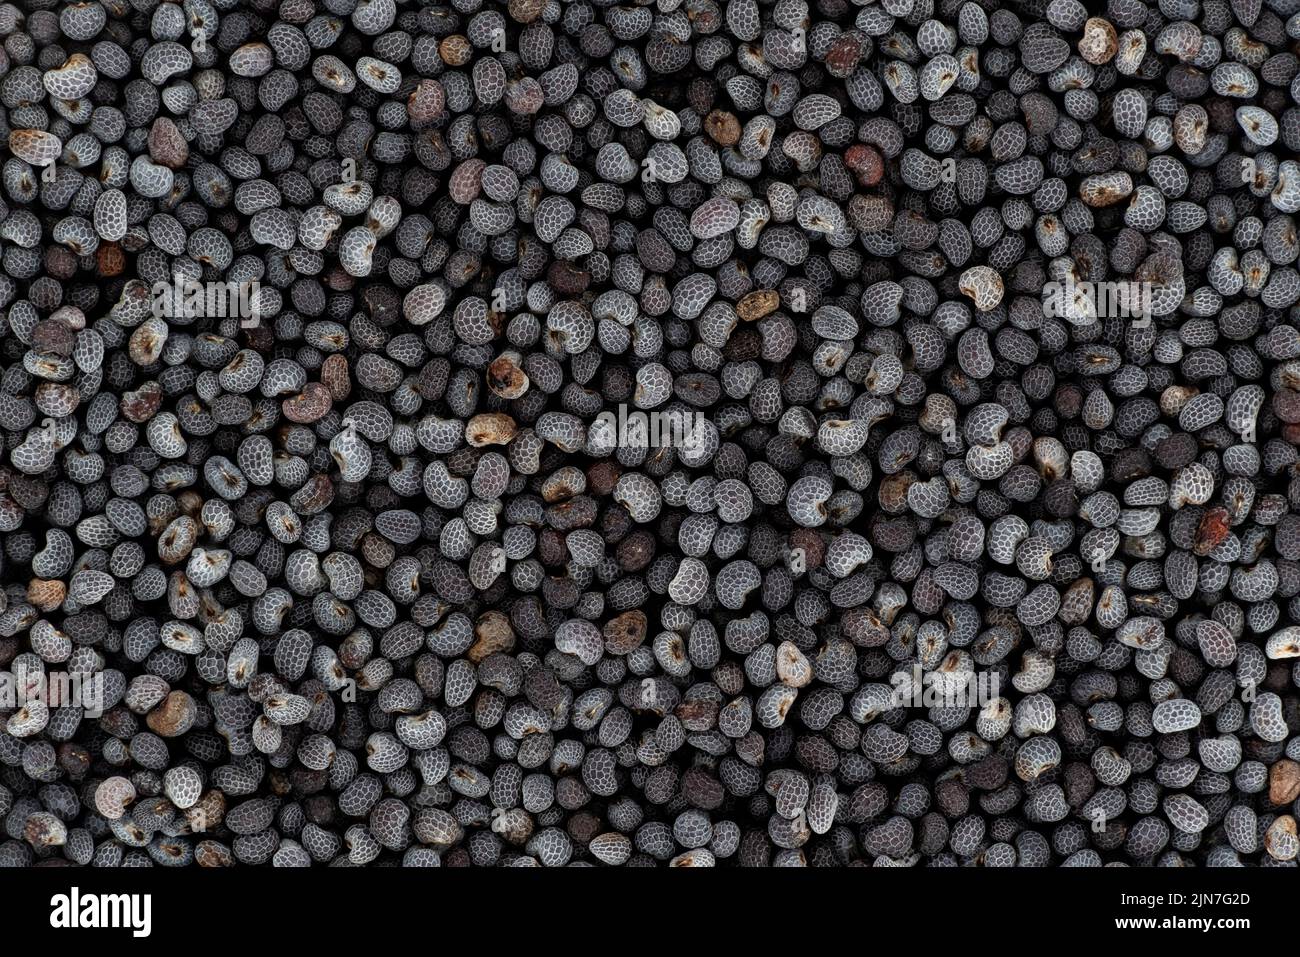 Graines de pavot noir ou bleu sous microscope, largeur de l'image 23mm Banque D'Images